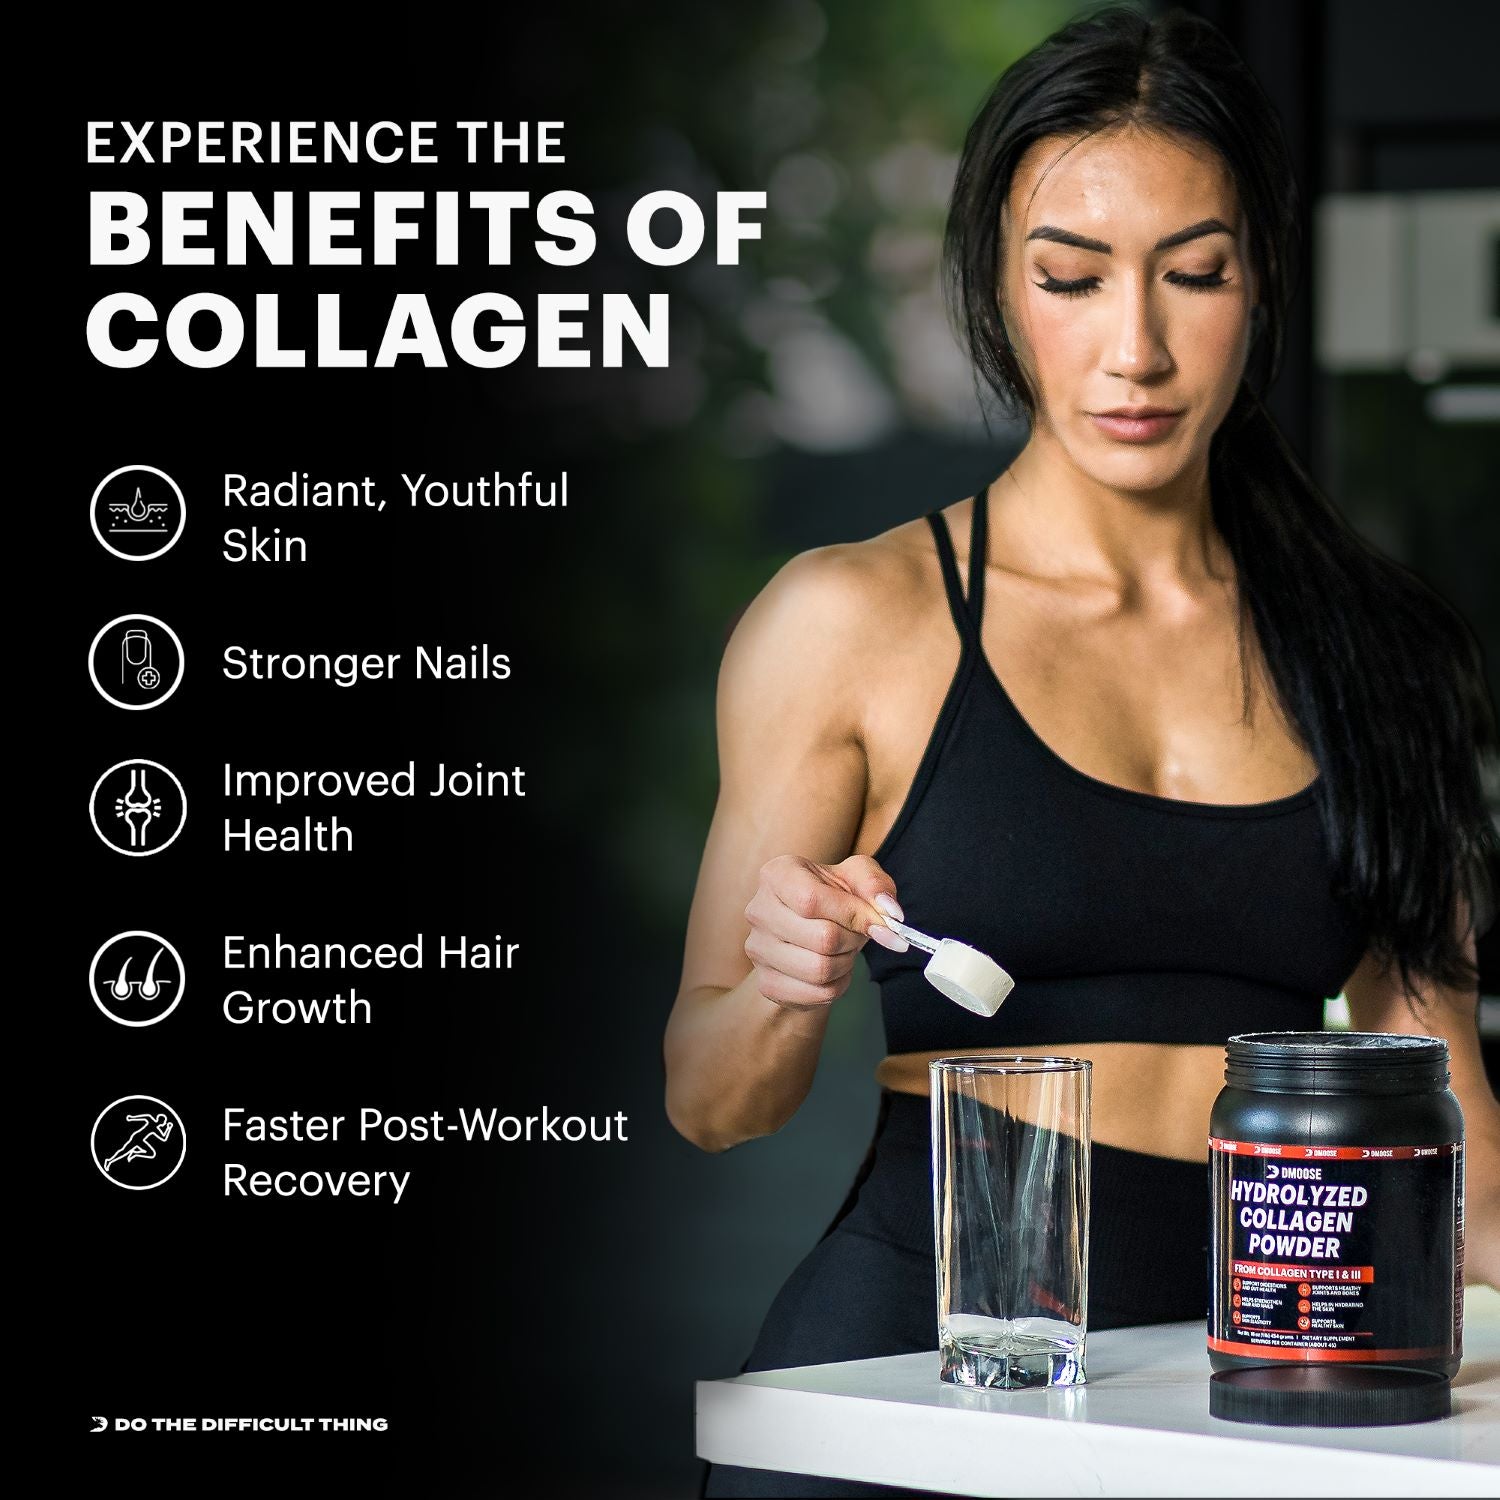 Ultimate Hydrolyzed Collagen Powder